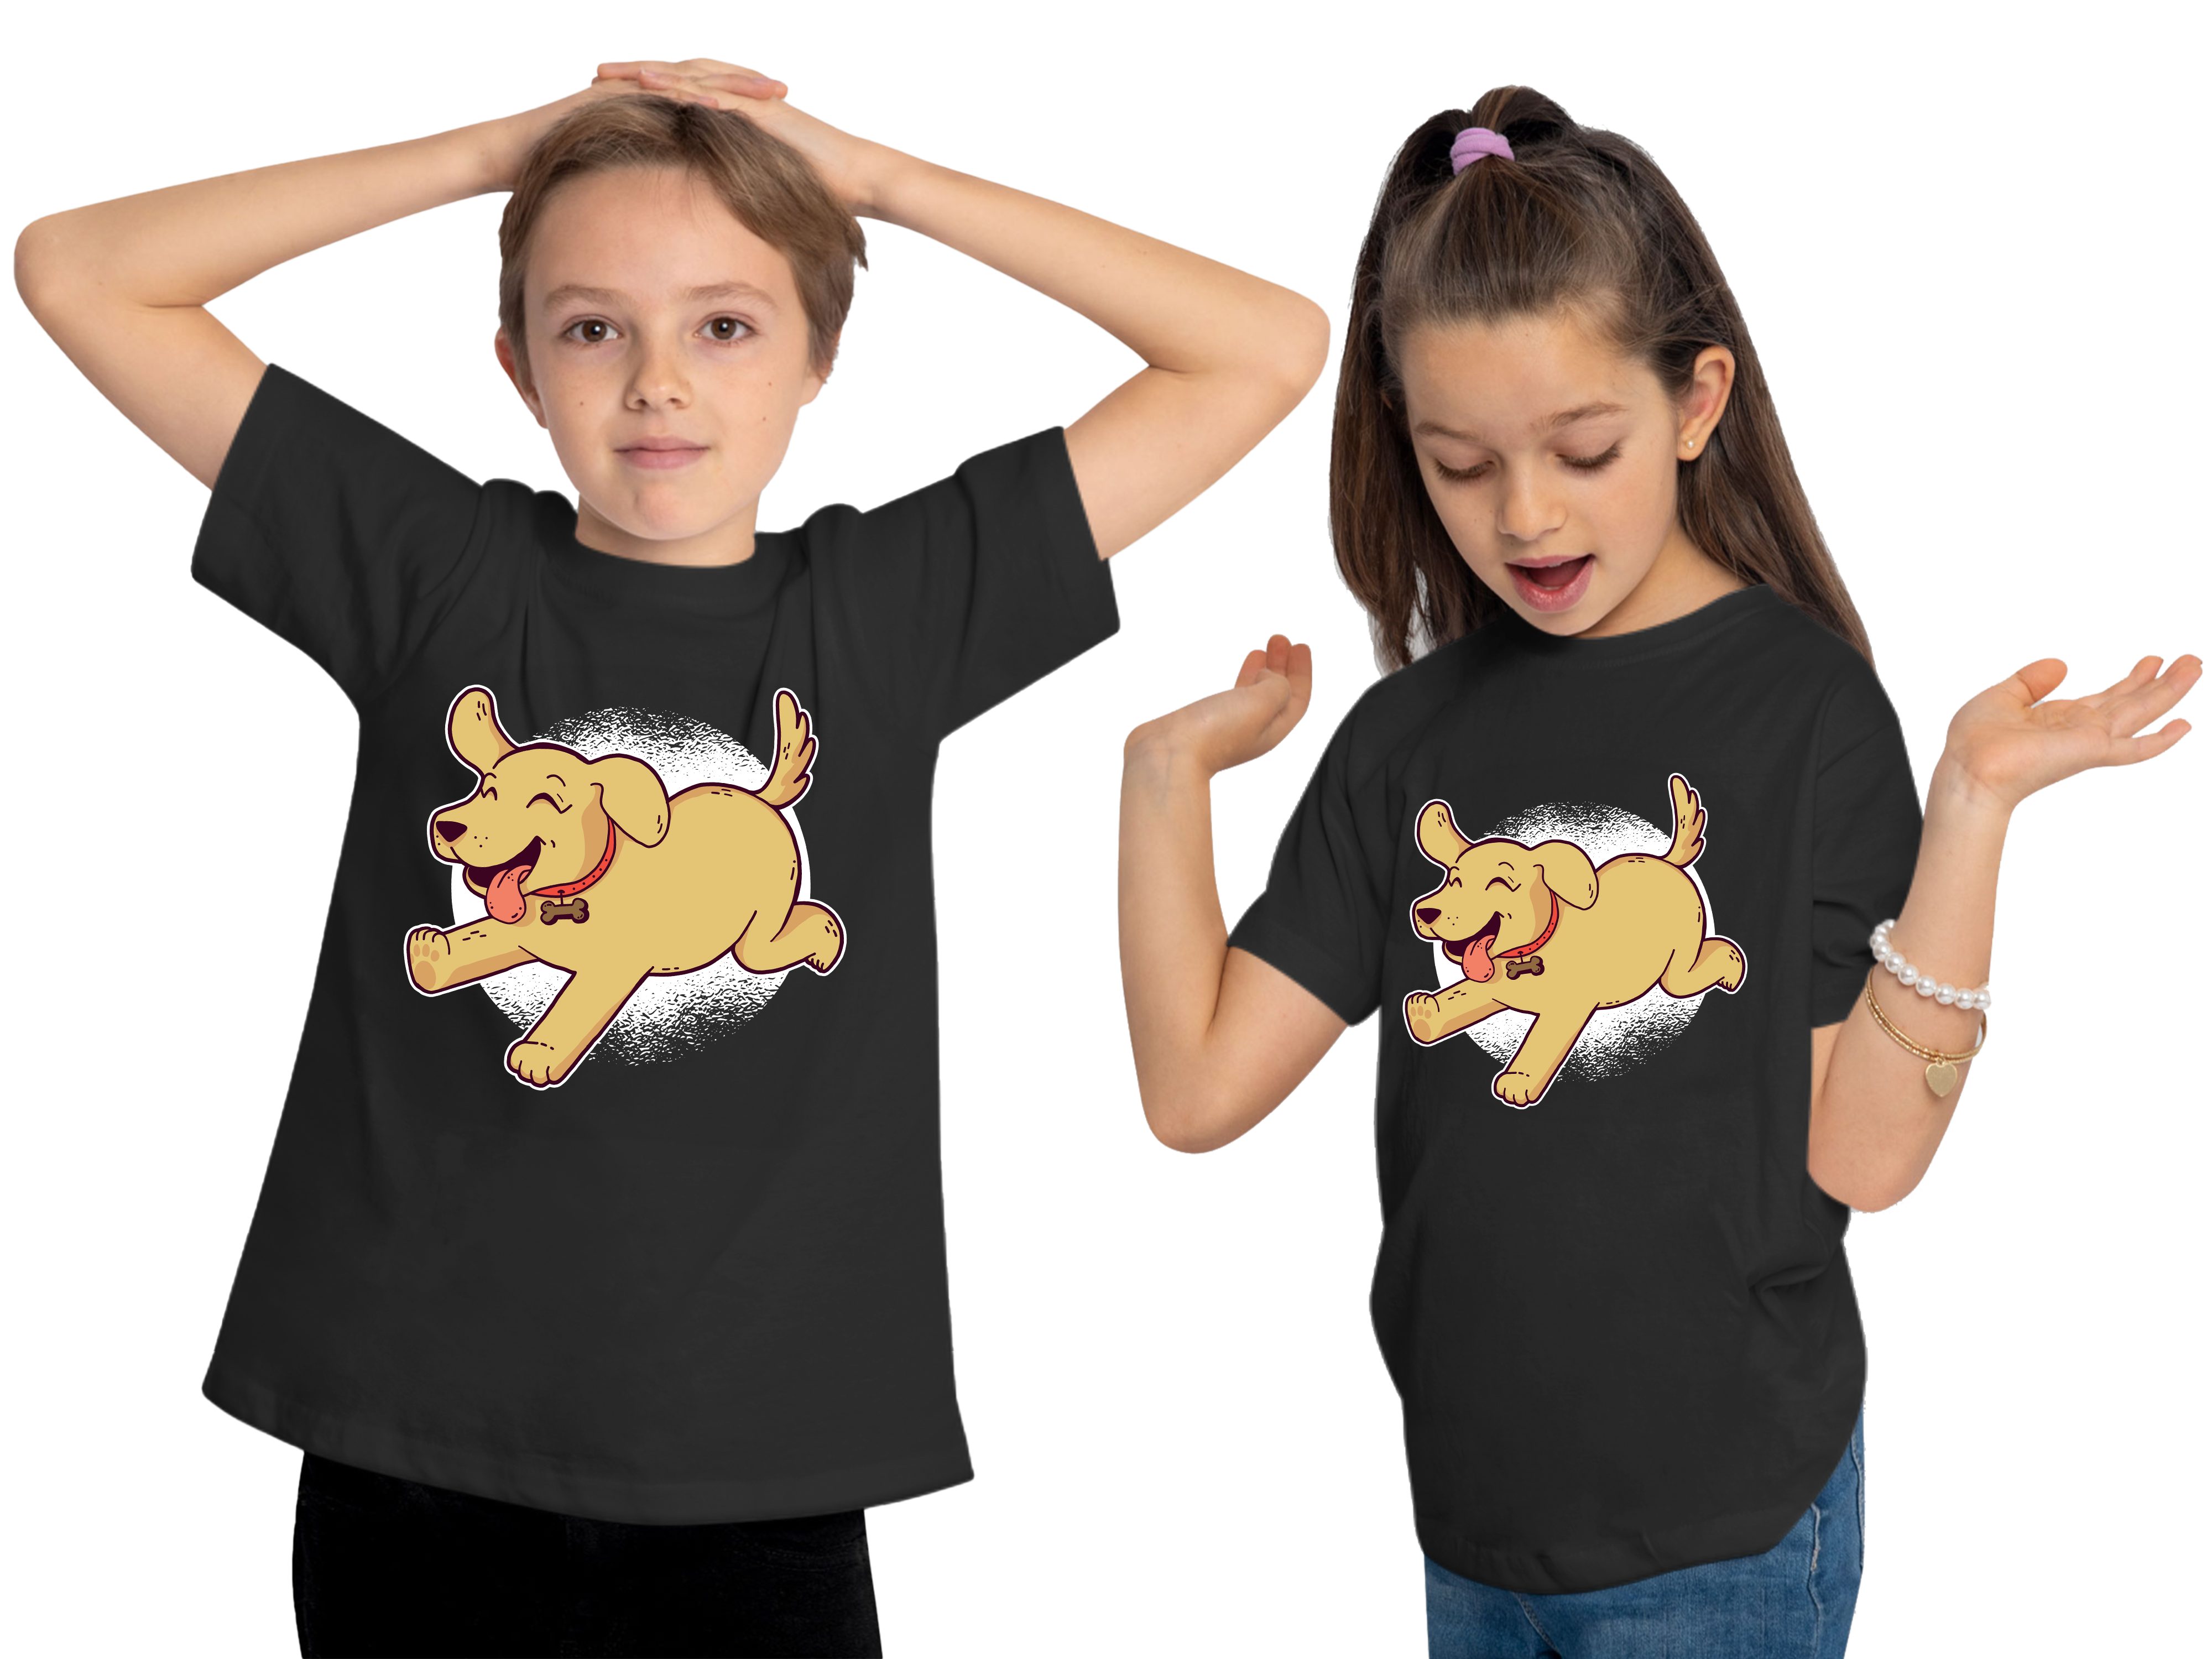 MyDesign24 T-Shirt Kinder Baumwollshirt Labrador mit - Hunde bedruckt Spielender Shirt Aufdruck, schwarz i248 Print Welpe